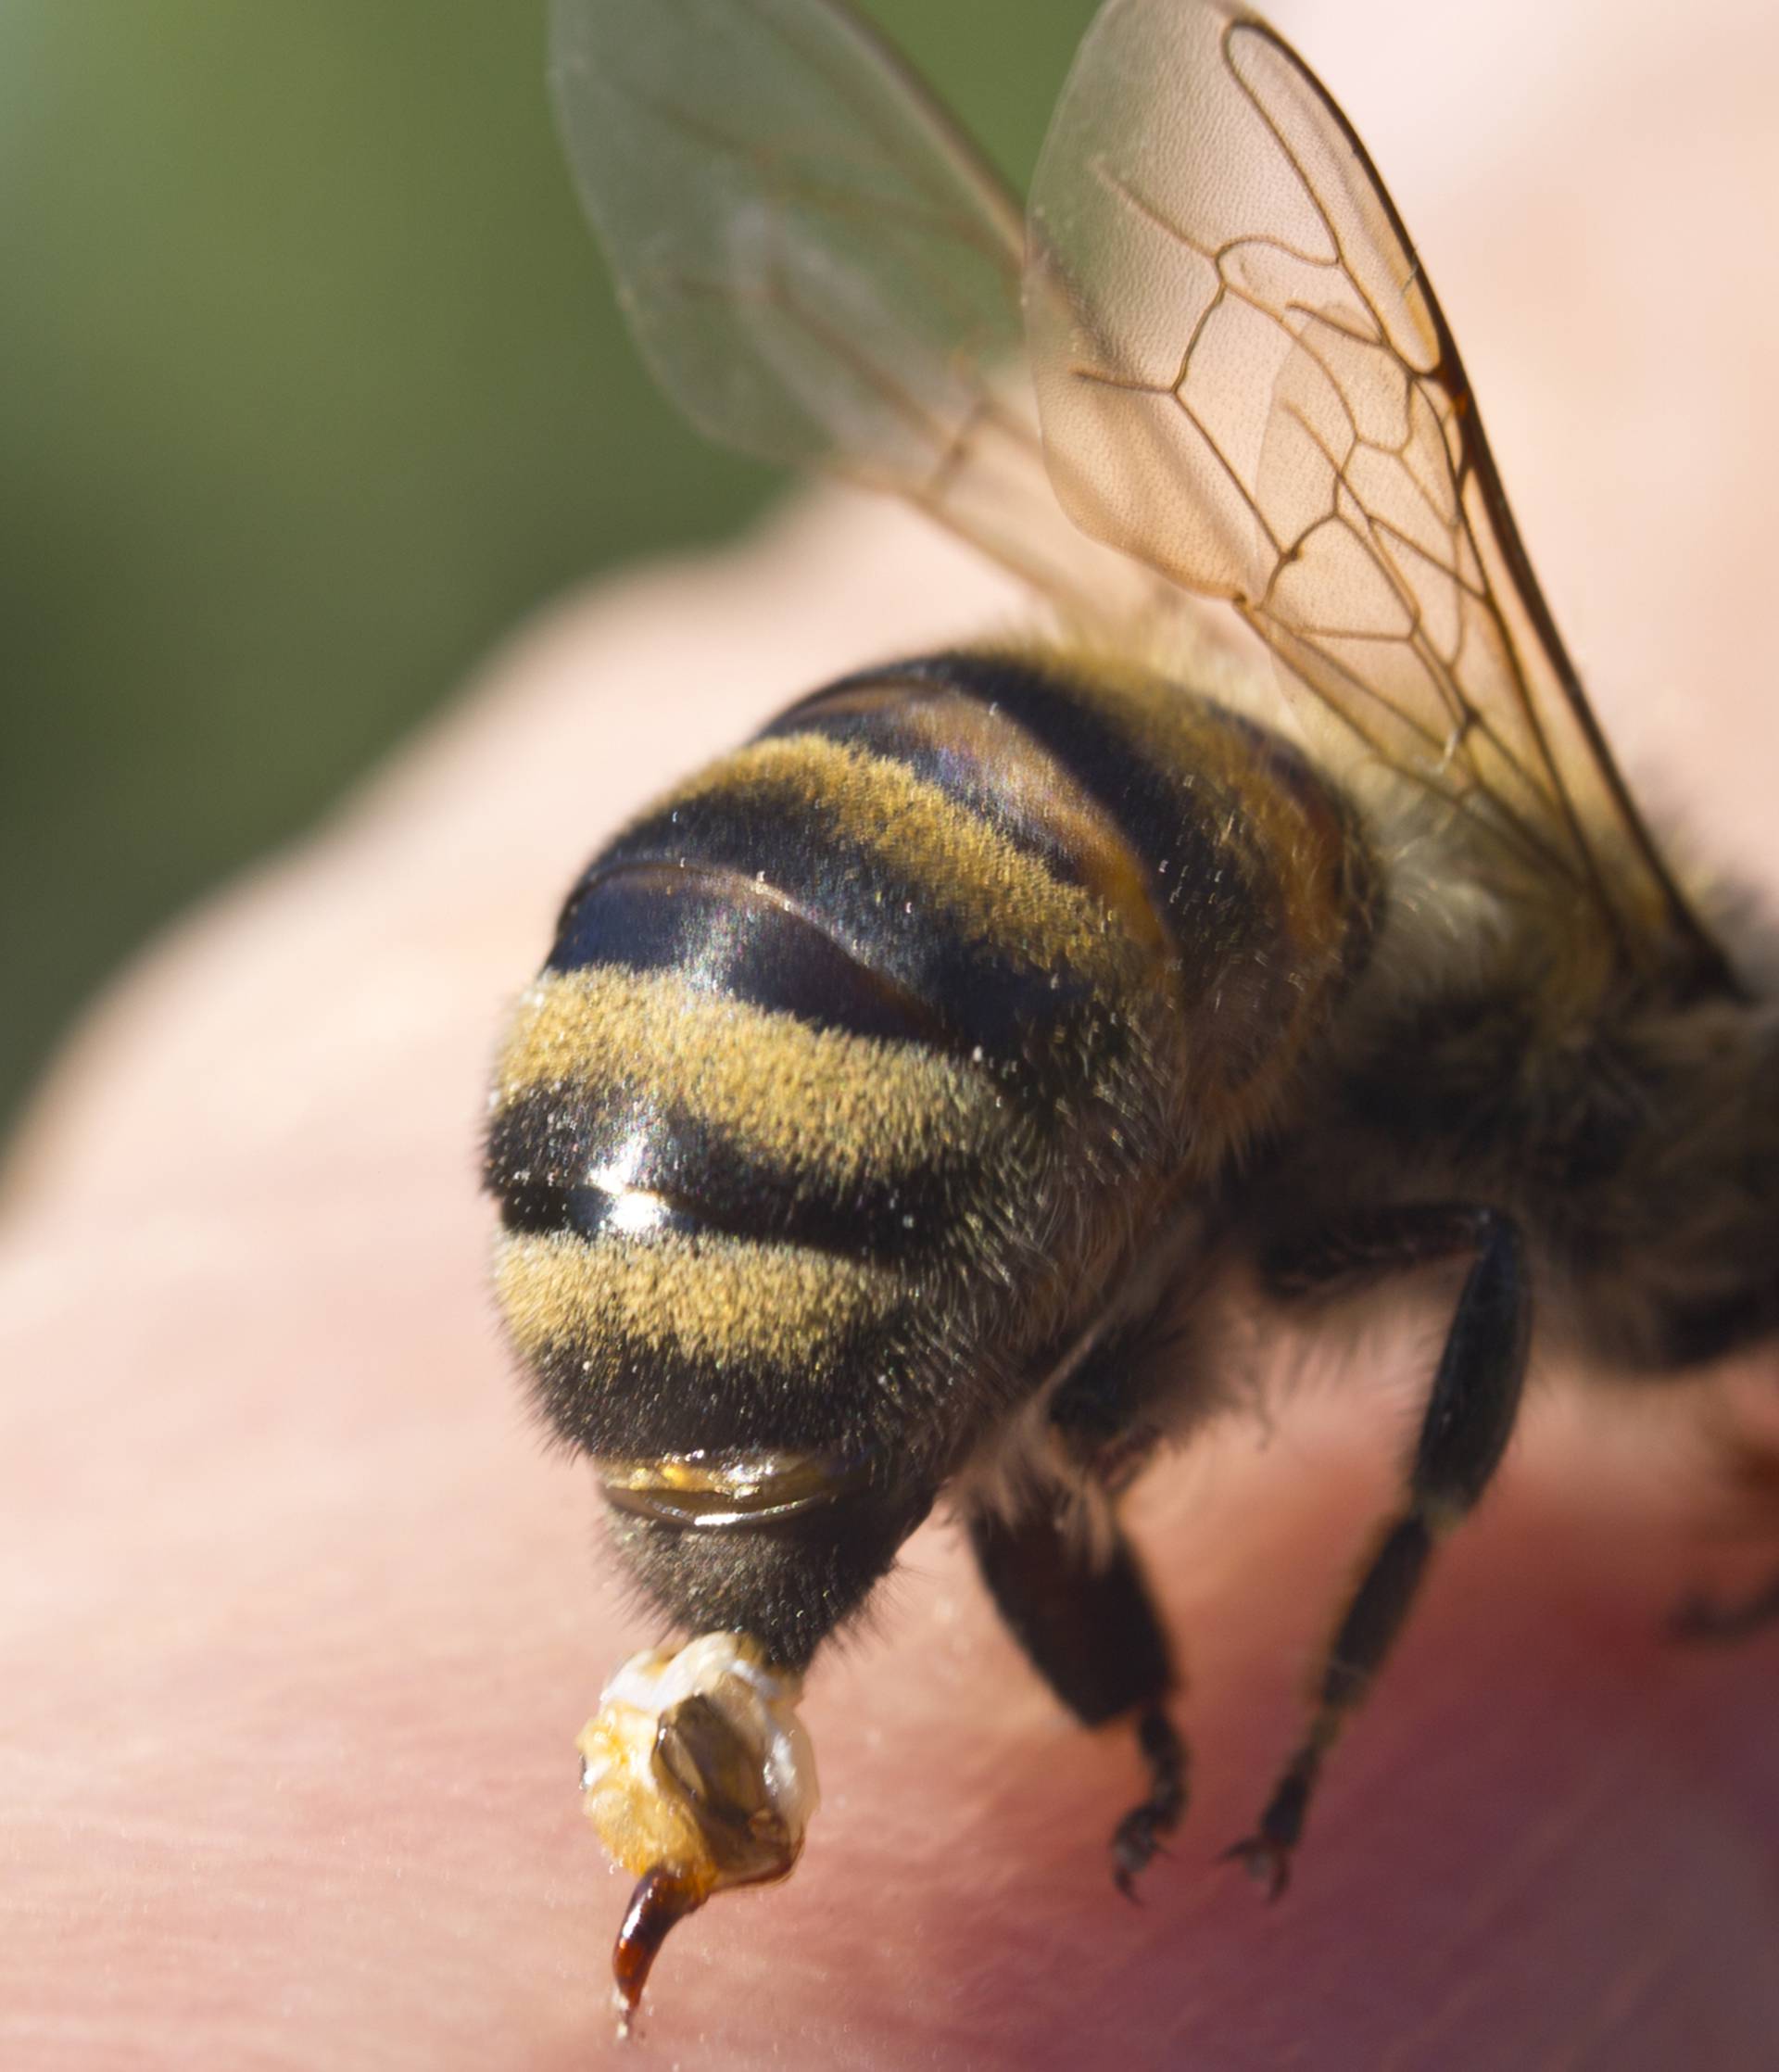 Super trik kako spriječiti bol i oticanje od uboda pčele, ose...